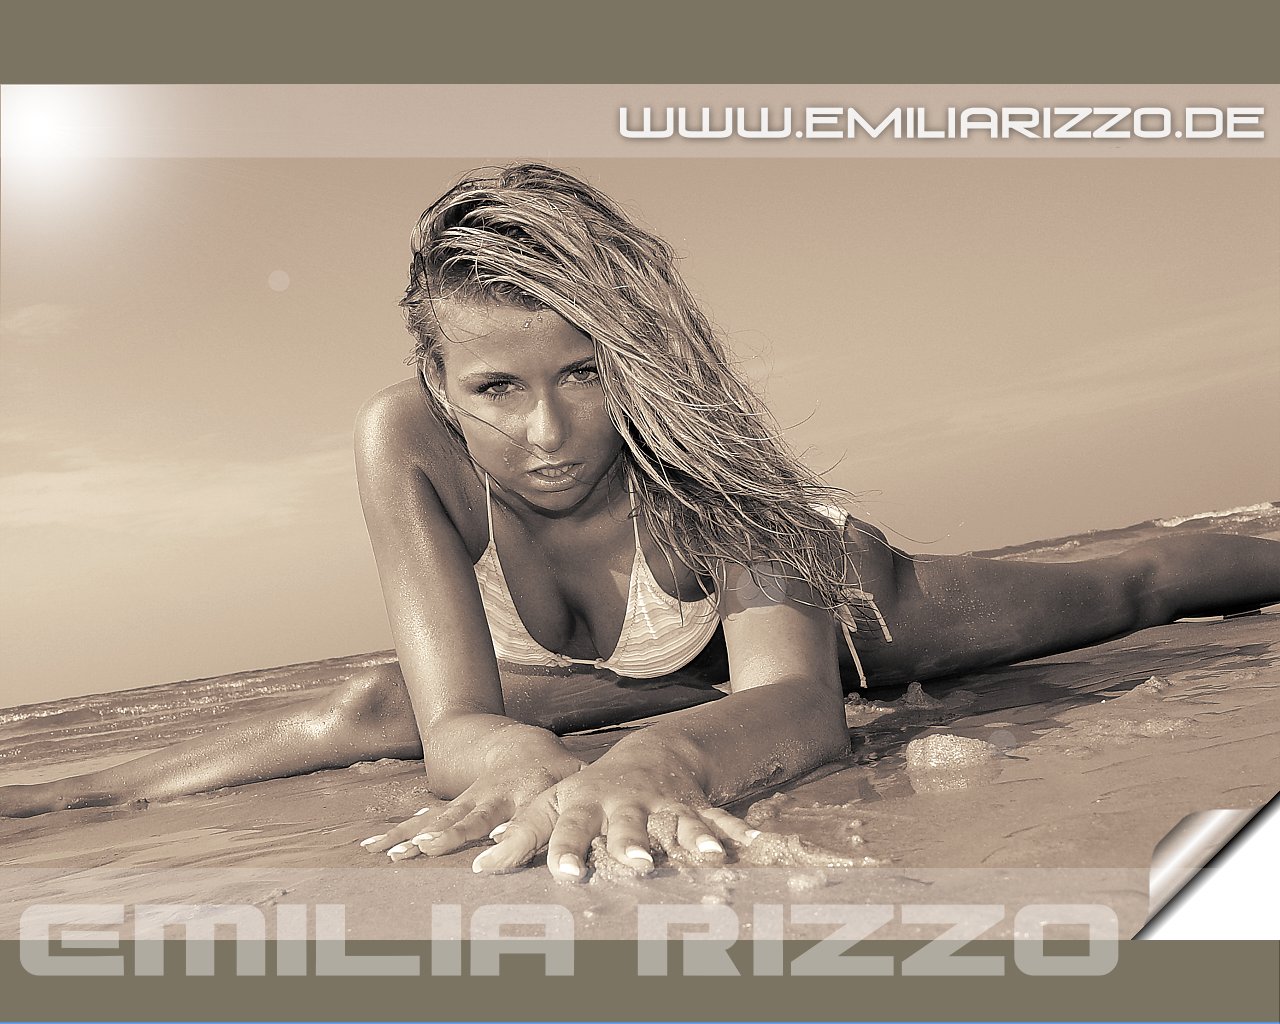 Download HQ Emilia Rizzo wallpaper / Celebrities Female / 1280x1024